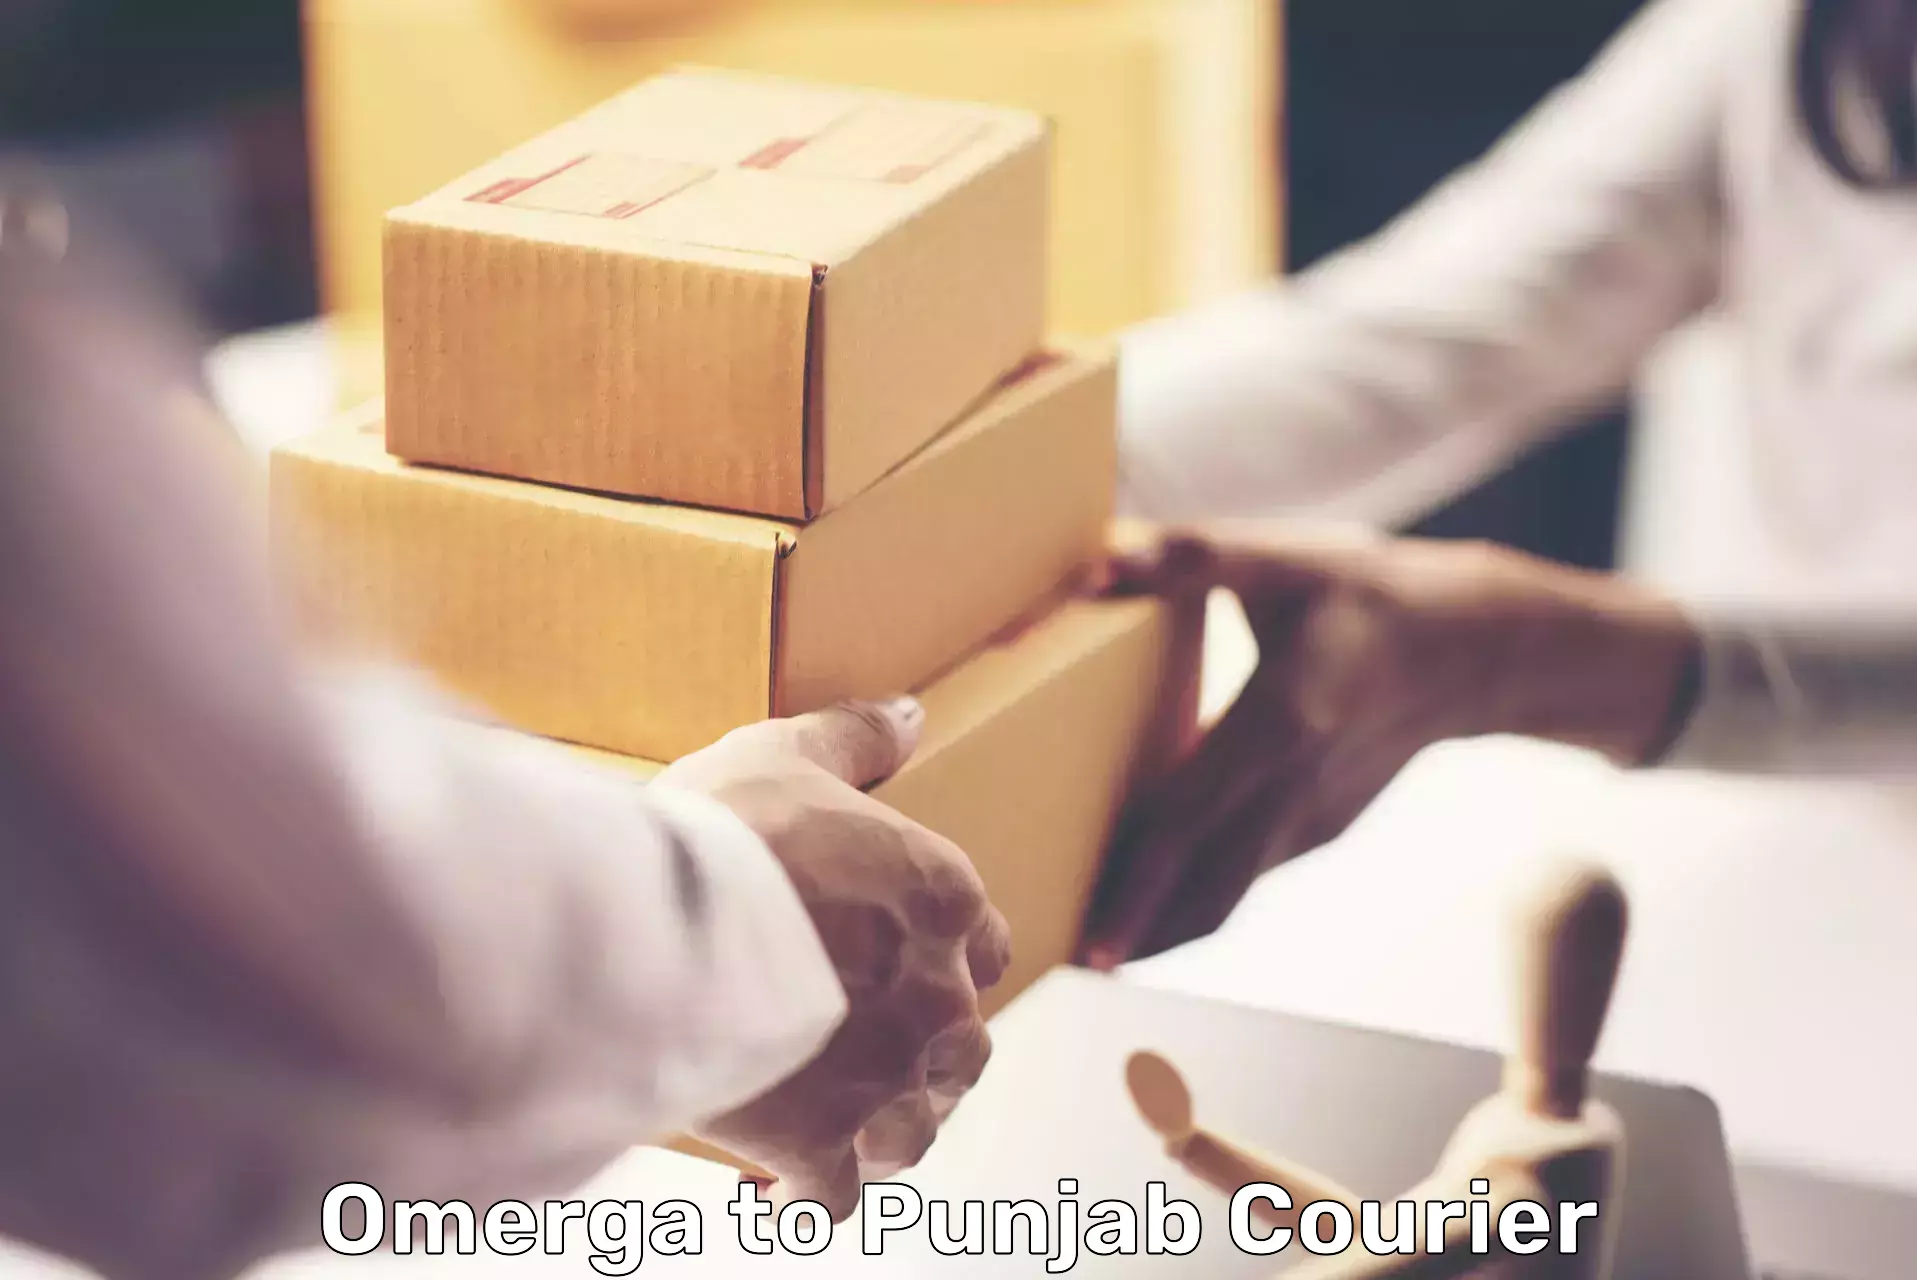 Shipping and handling Omerga to Punjab